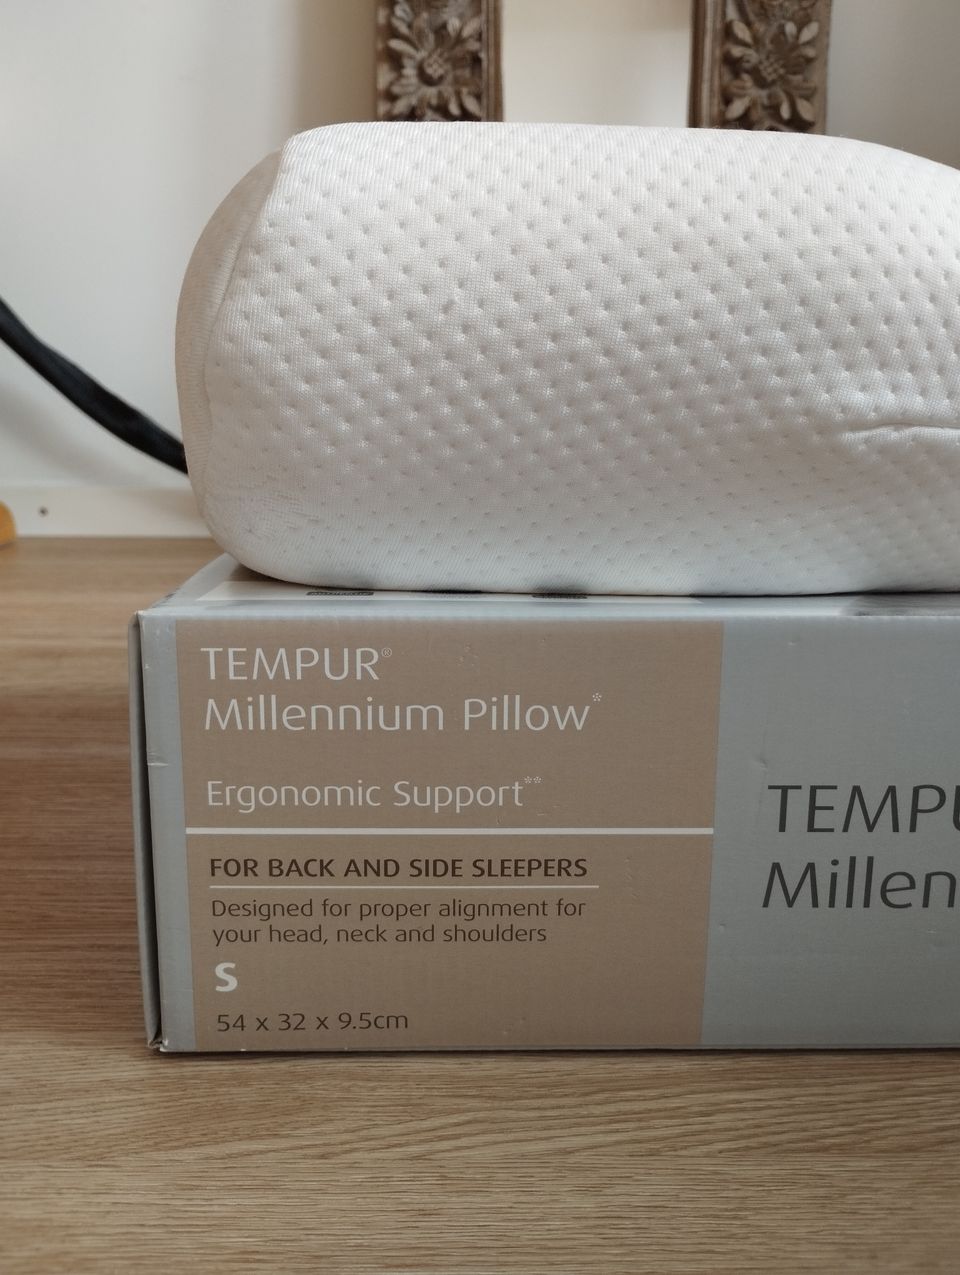 Tempur Millennium Pillow